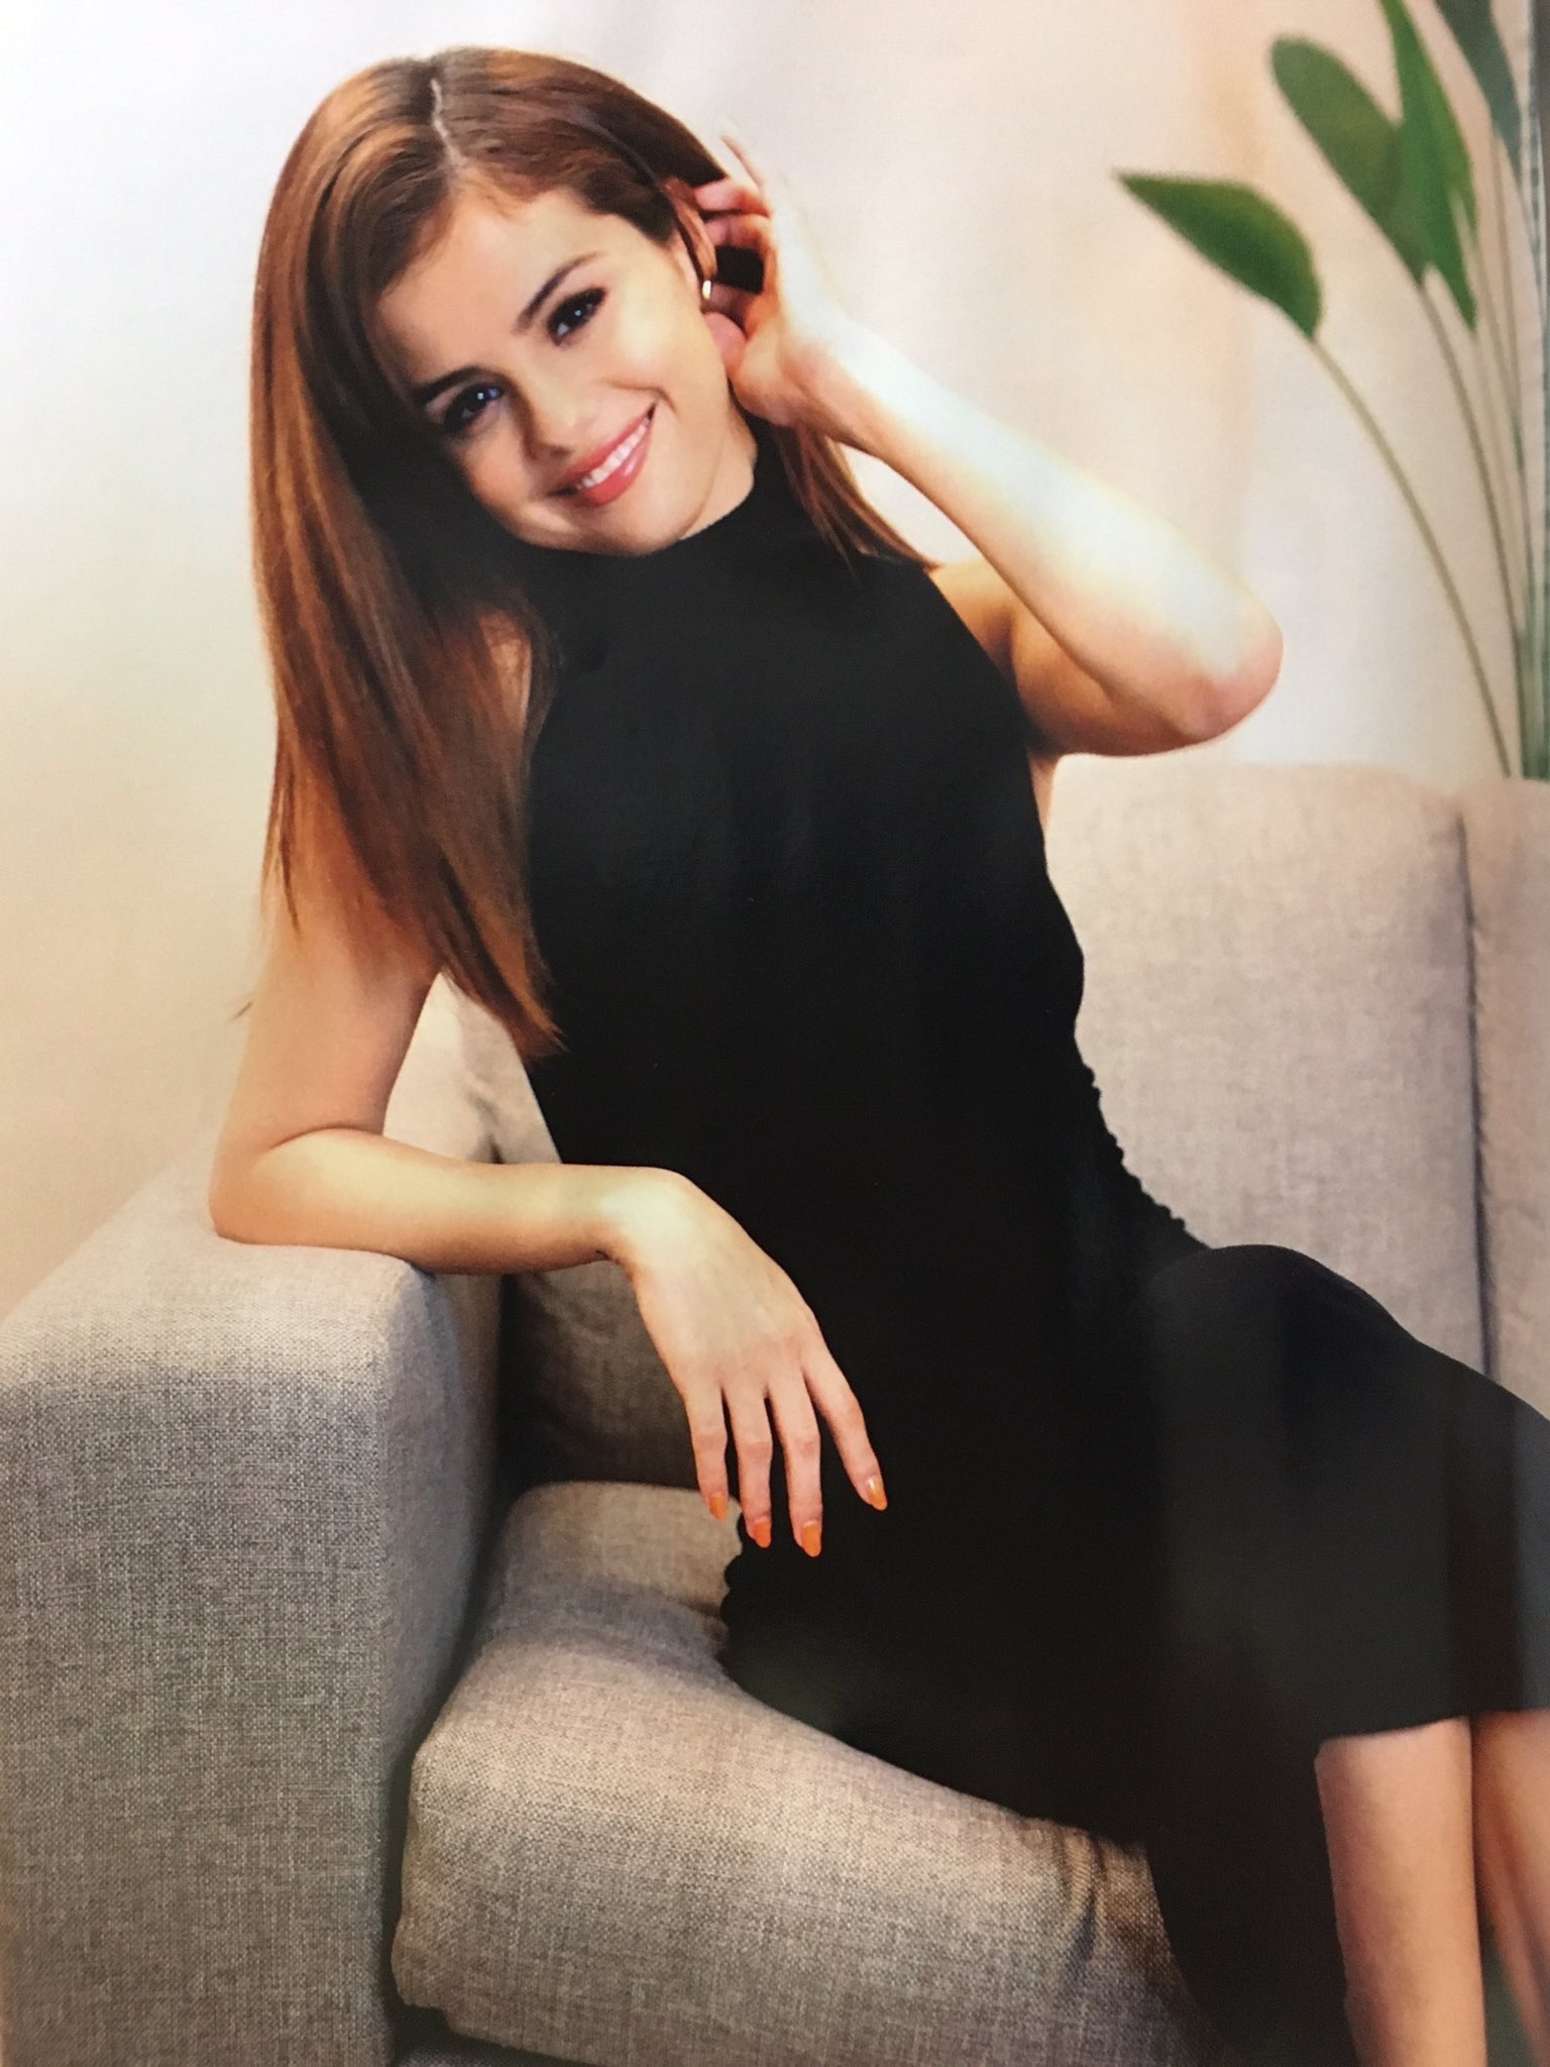 Selena Gomez Pics 2016 Adult Images